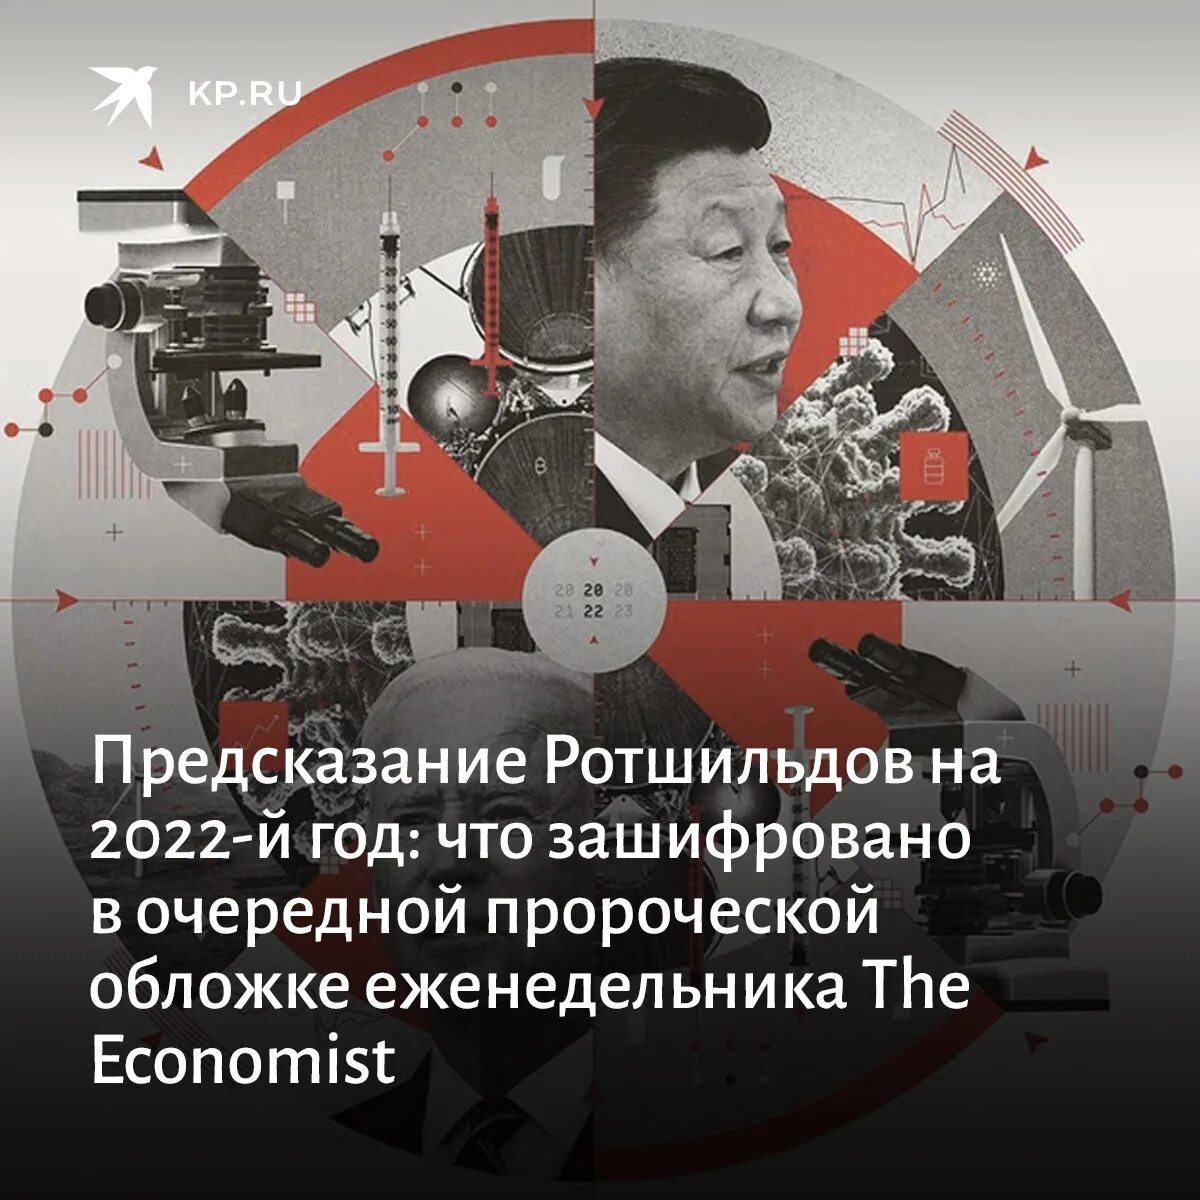 Предсказание бюро прогнозов. The Economist 2022 обложка. Ротшильд экономист 2022. Обложка the Economist на 2022 год. Обложка Ротшильдов 2022.